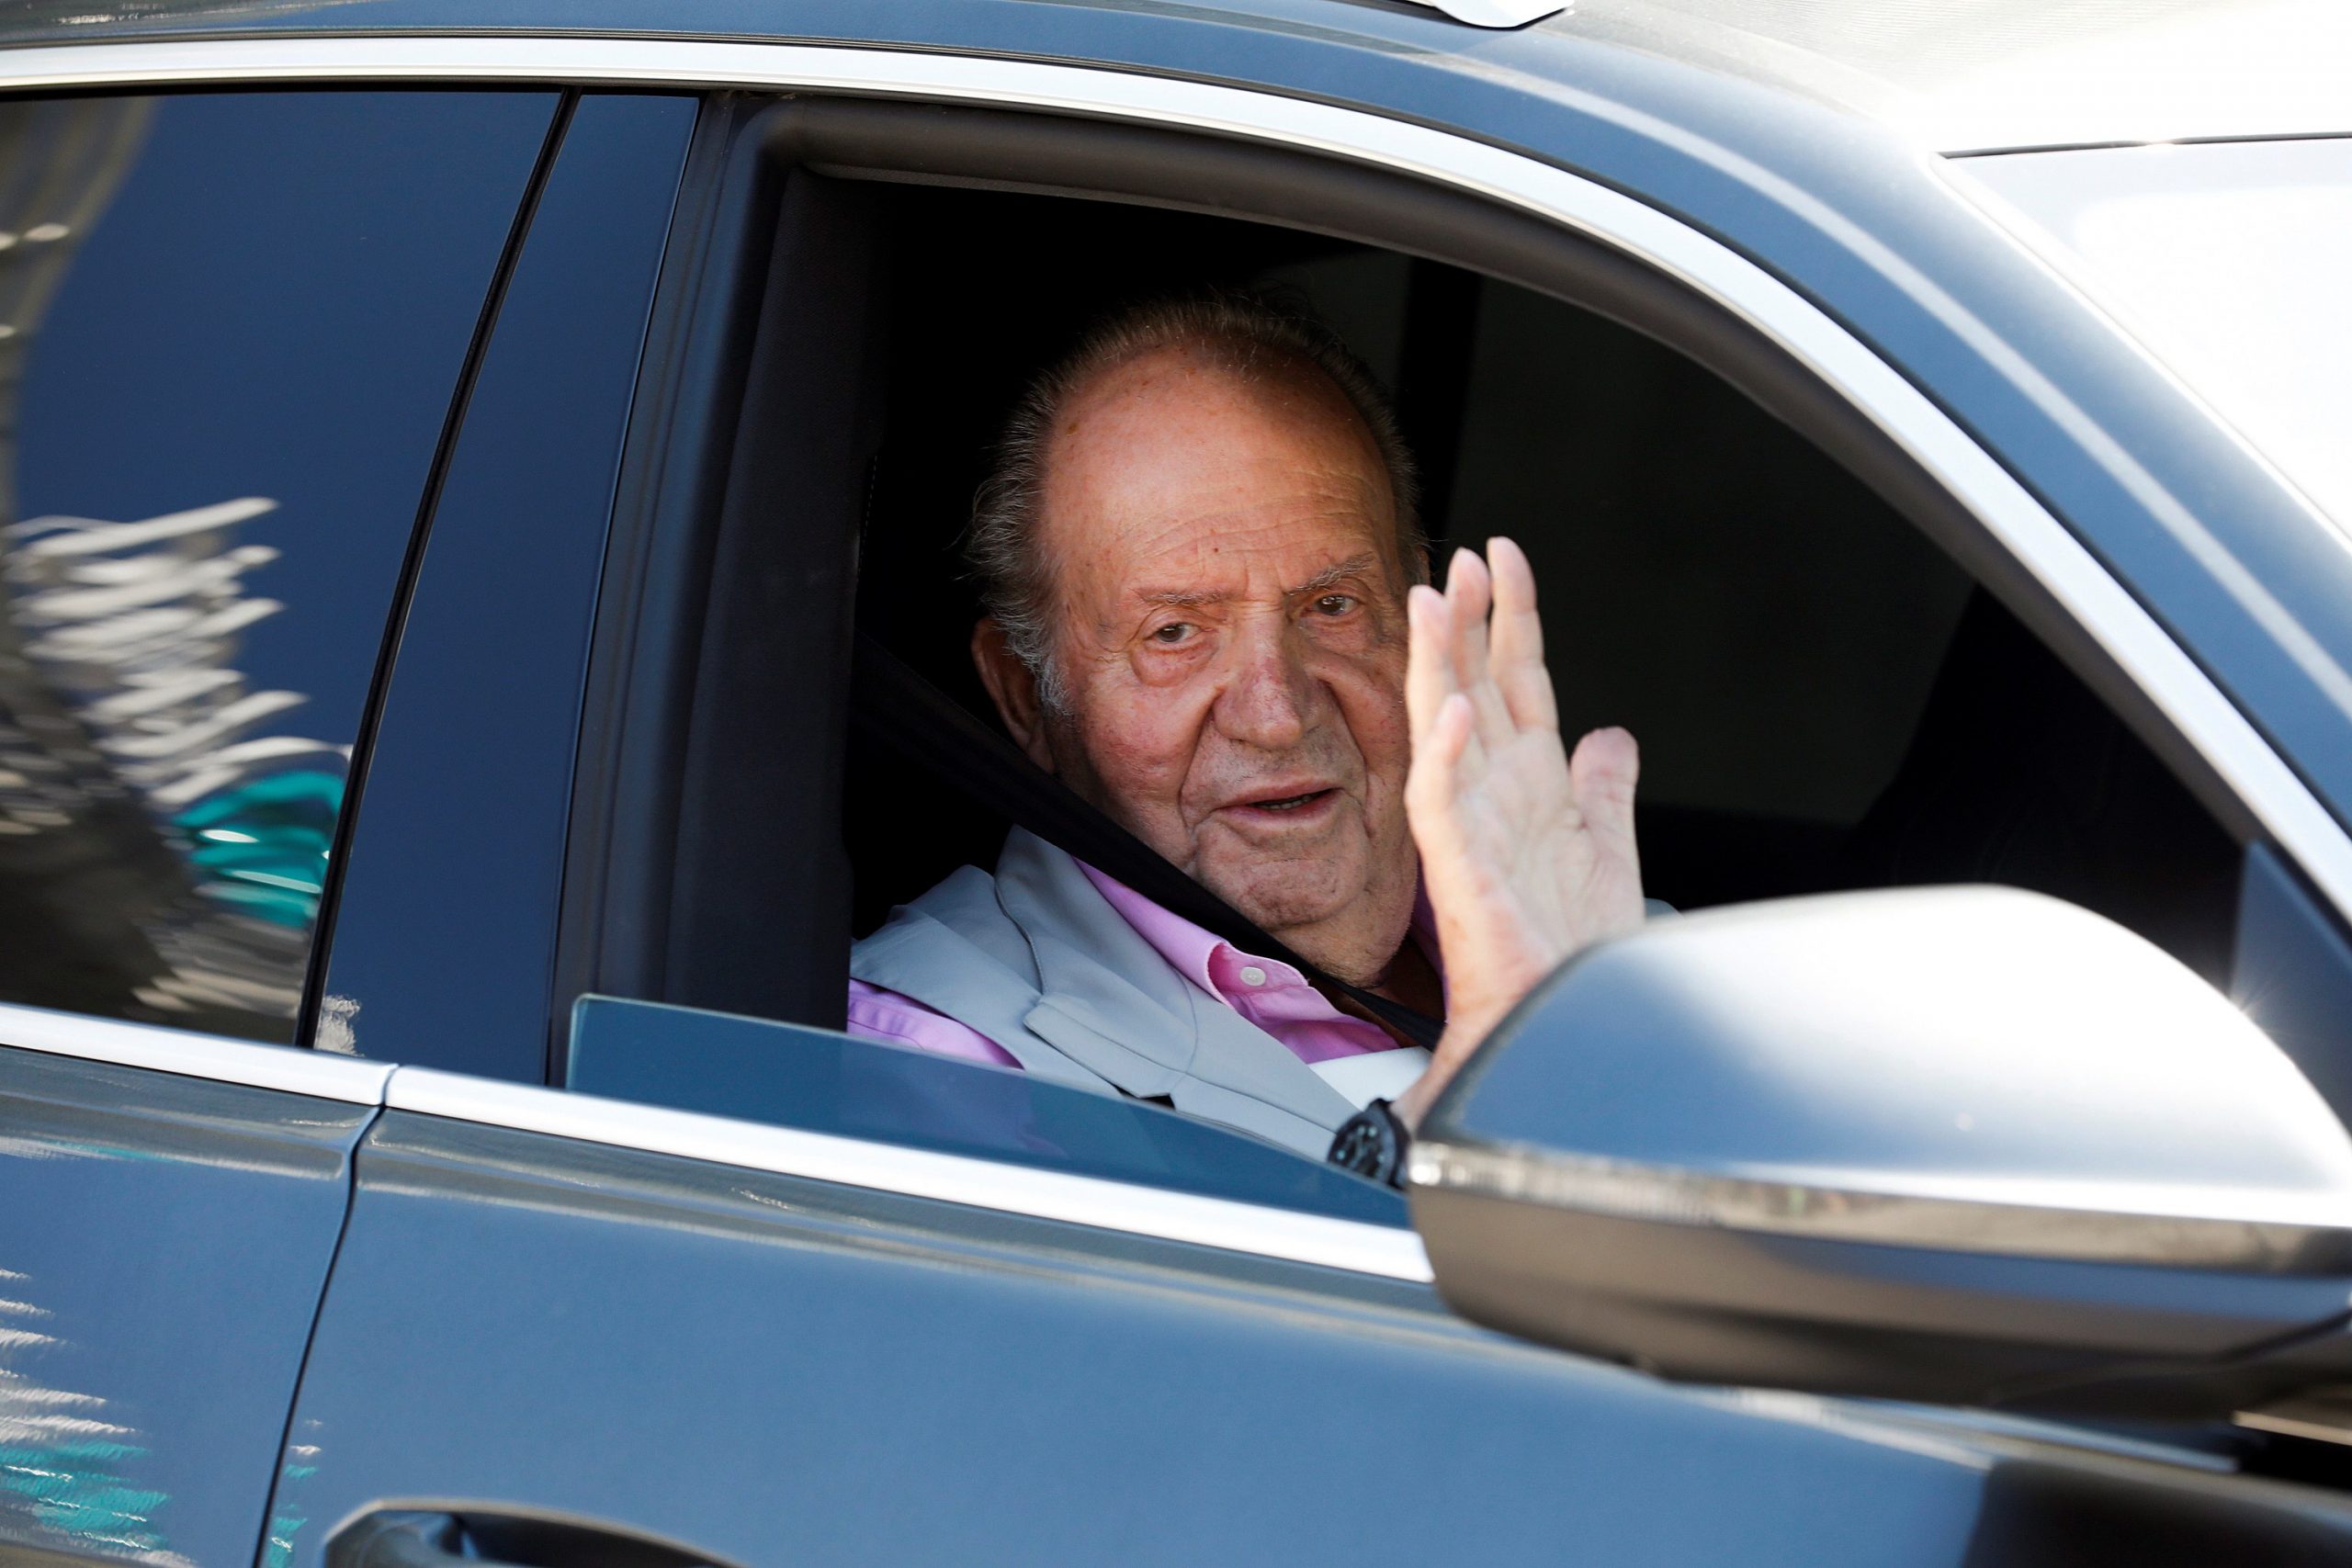 Voormalig koning Juan Carlos van Spanje bij het verlaten van het ziekenhuis in augustus 2019 na een drievoudige bypass-operatie.